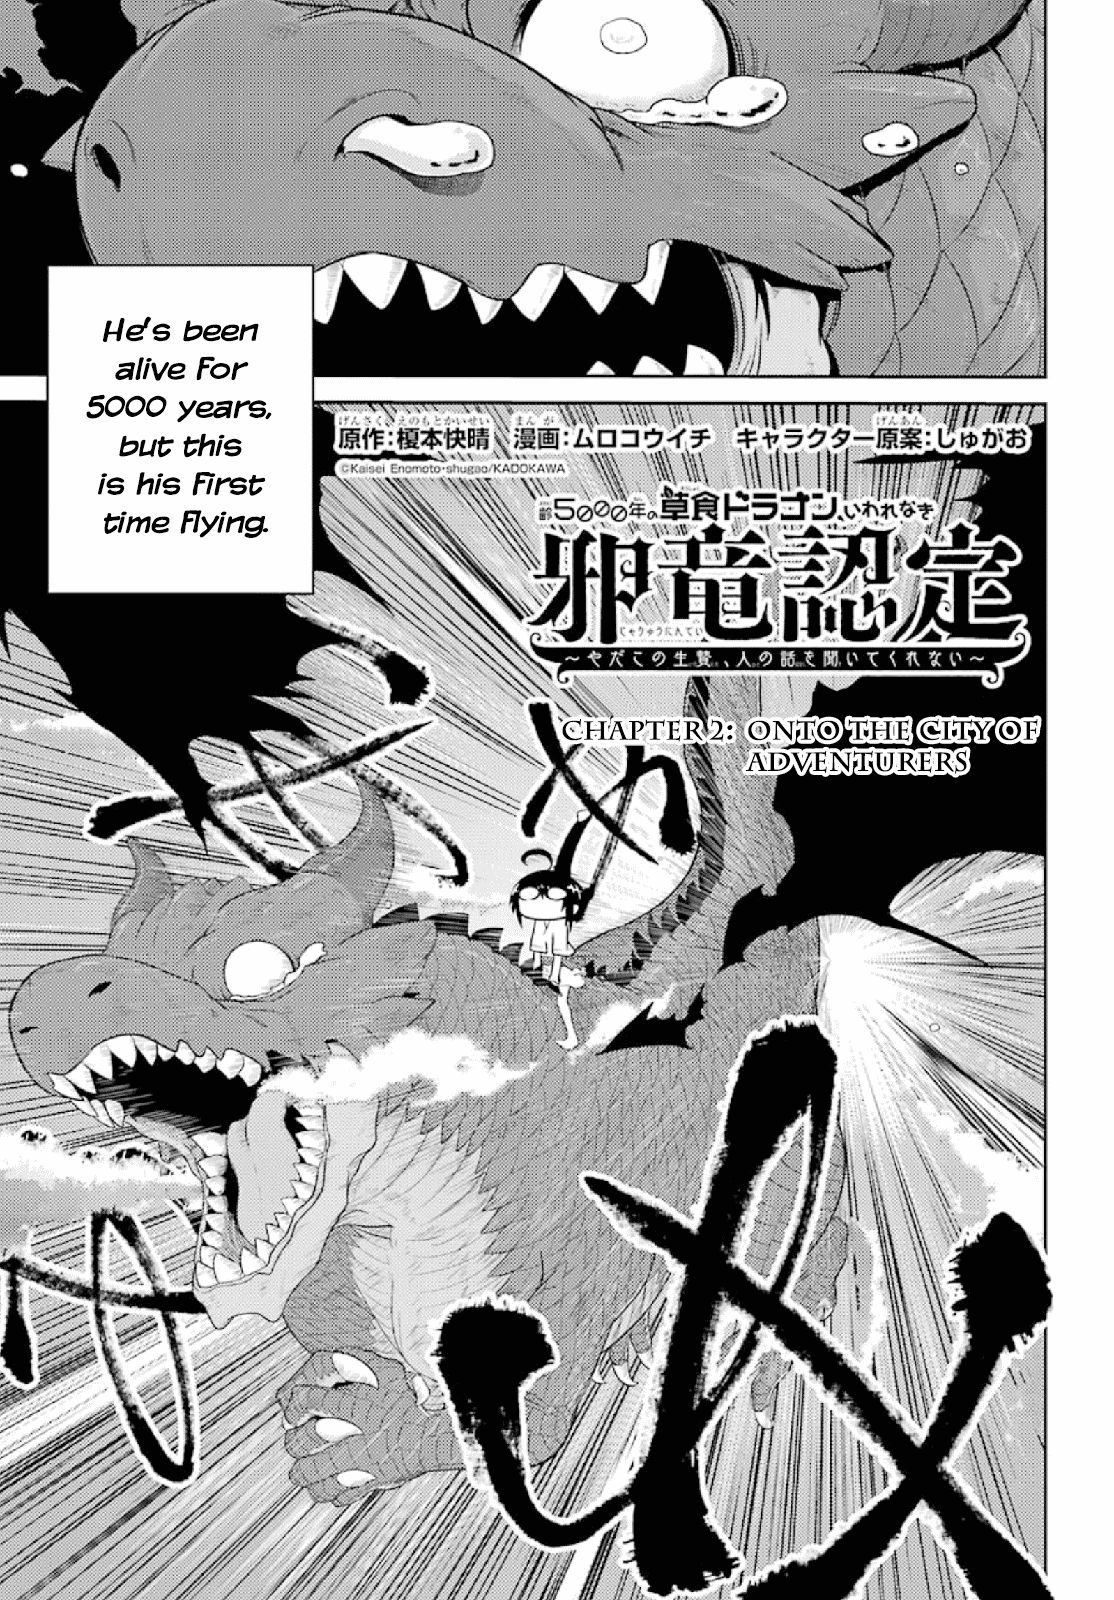 Read Manga Weak 5000 Year Old Vegan Dragon Chapter 2 Read Manga Online In English Free Manga Reading